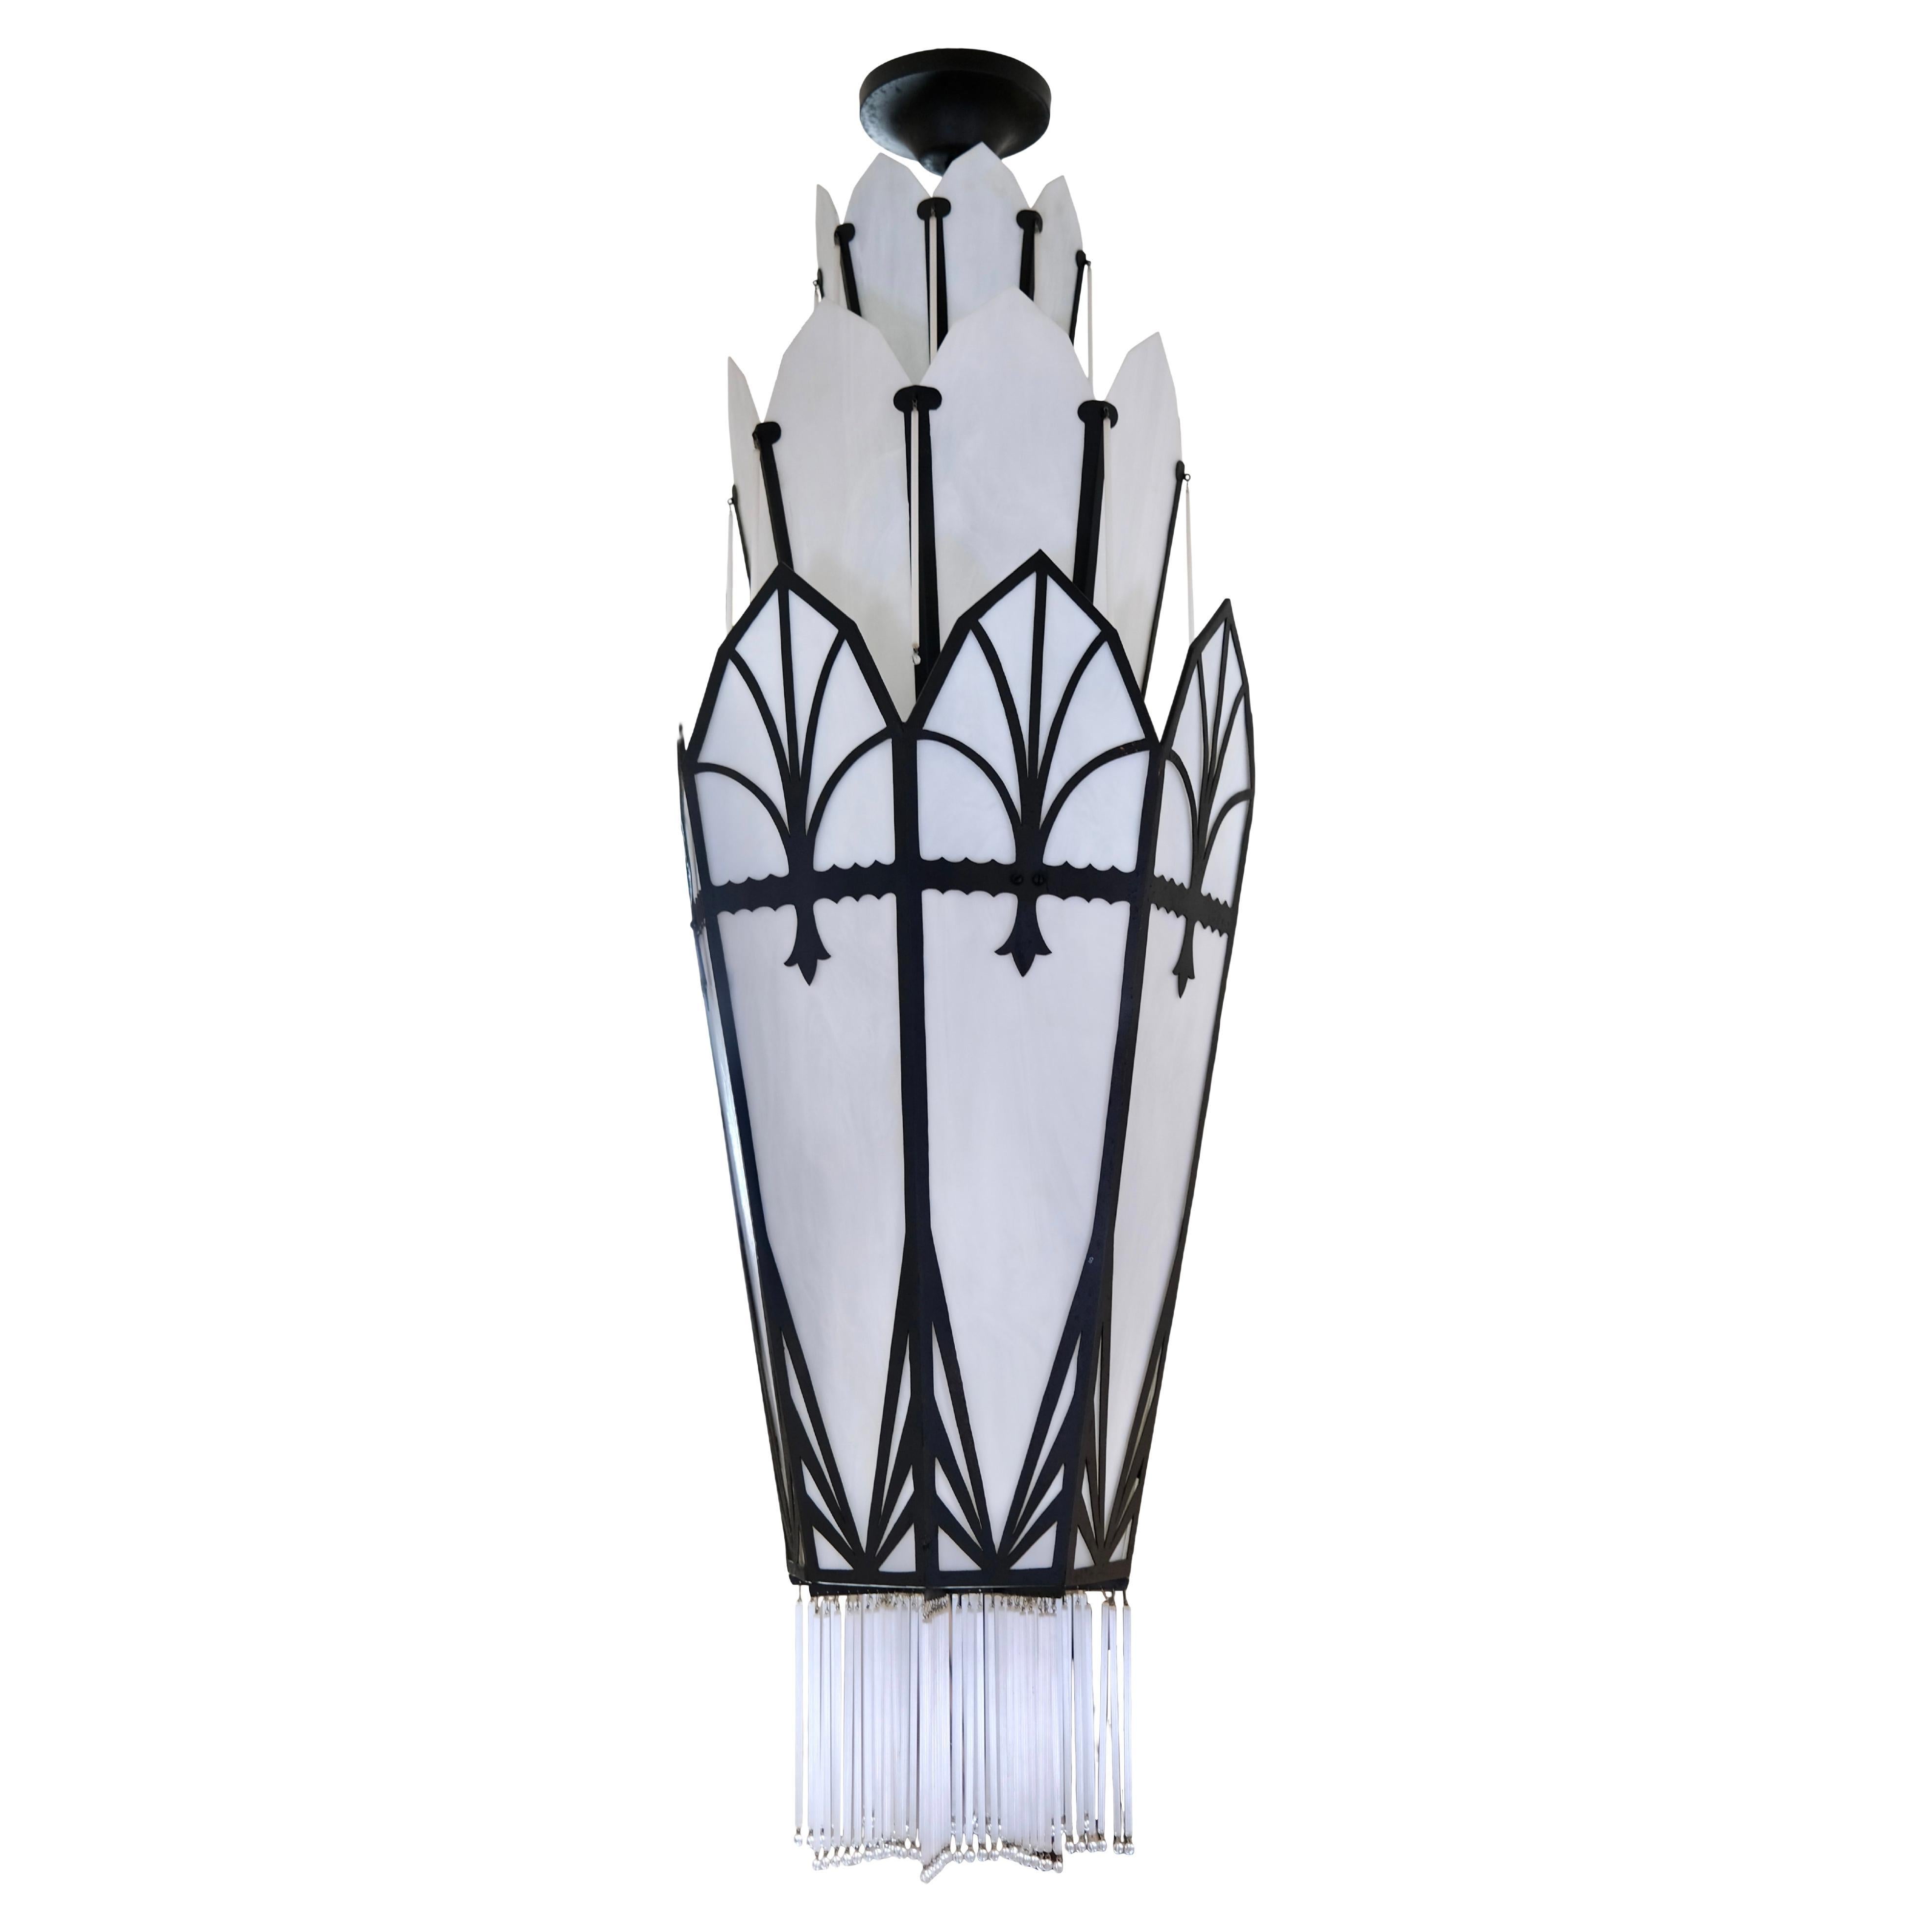 Langer achteckiger Kronleuchter im Art-Déco-Stil mit Glas- und schwarzer Metallhalterung